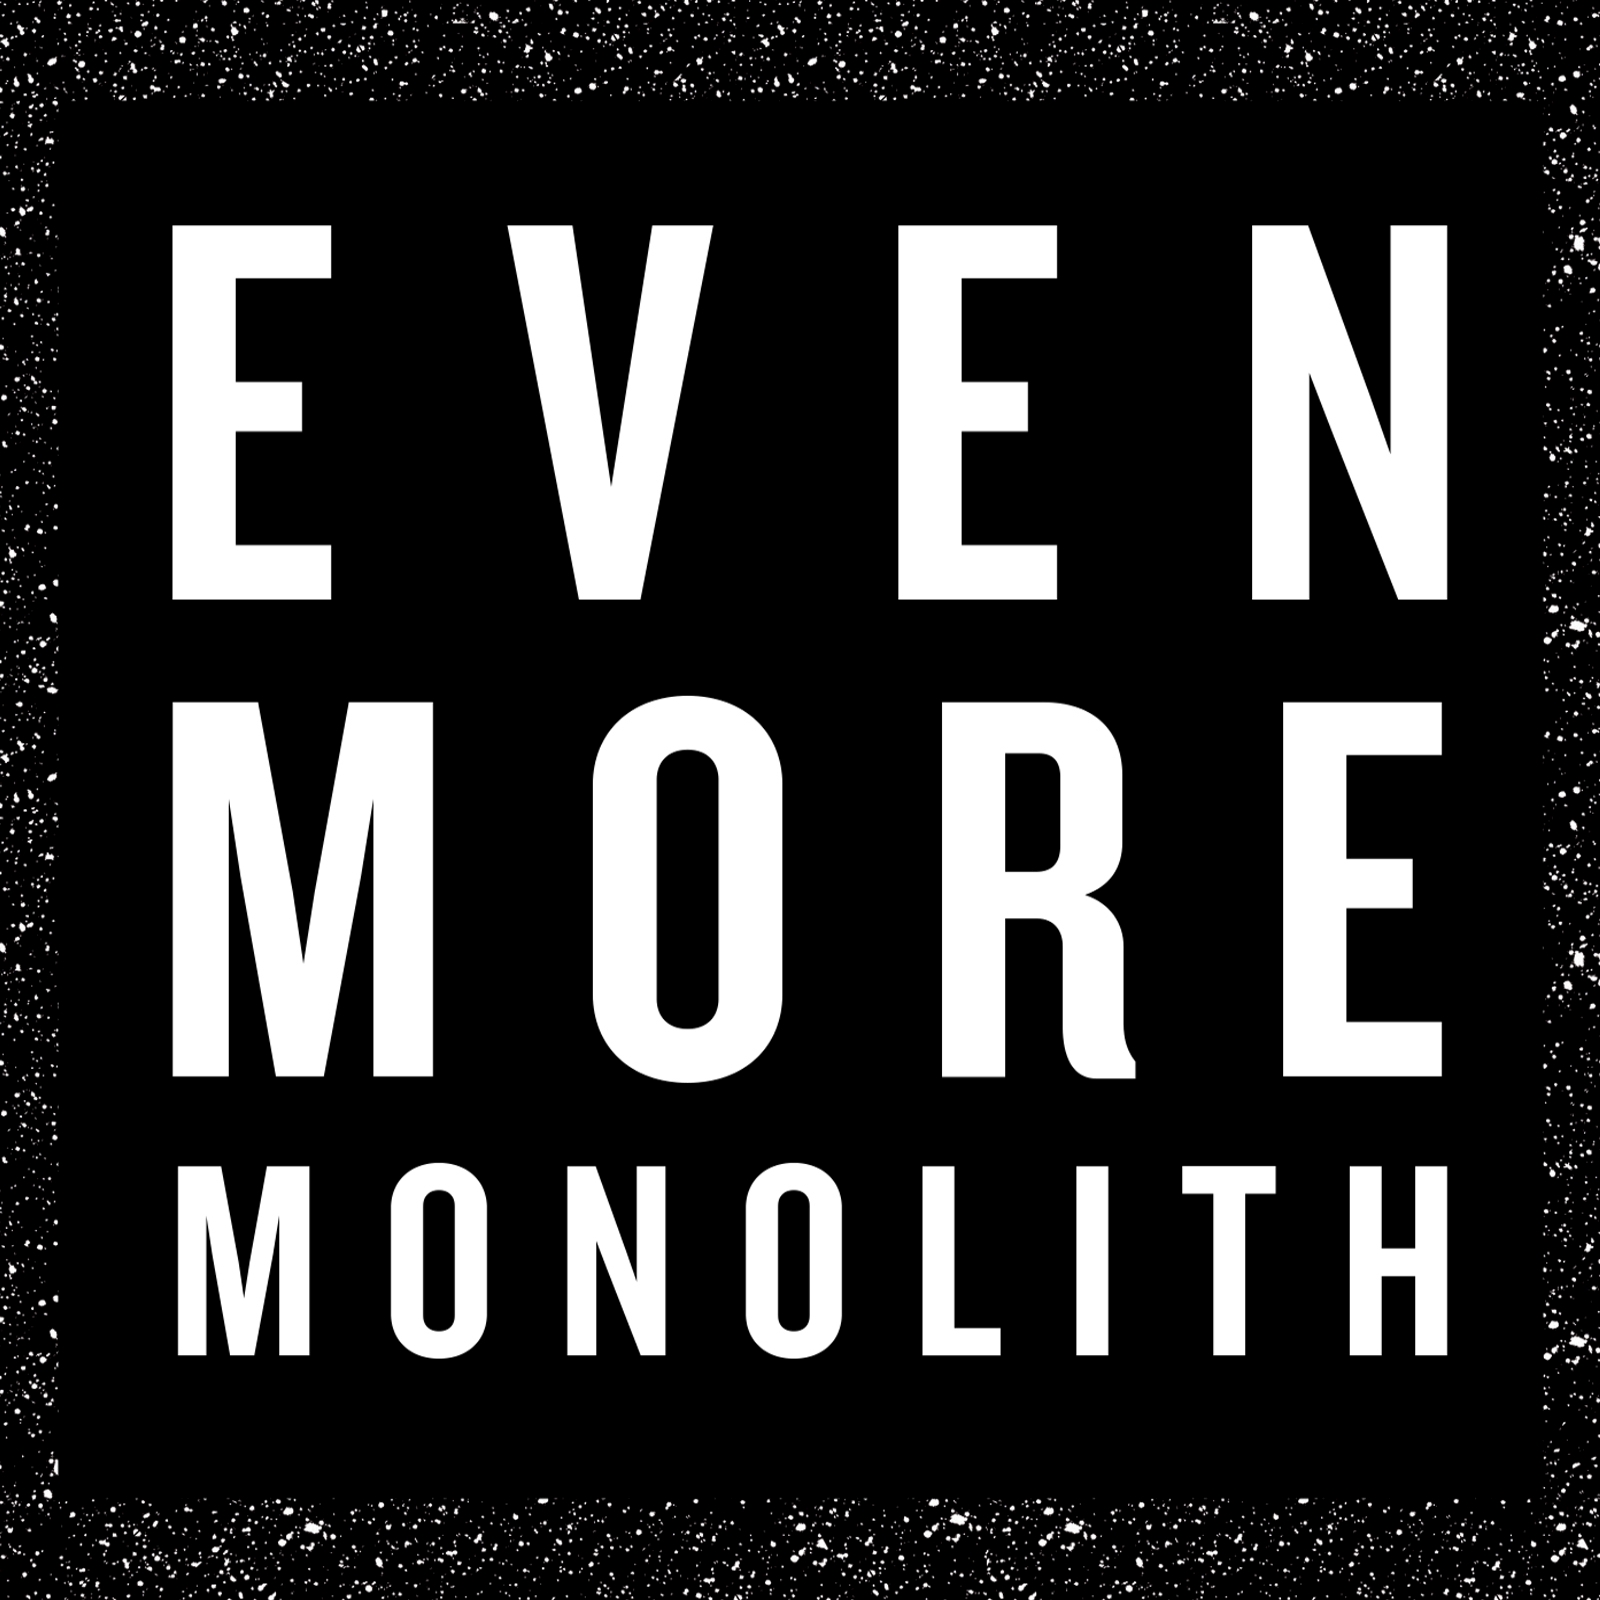 Monolith: “Se non uccide, fortifica”